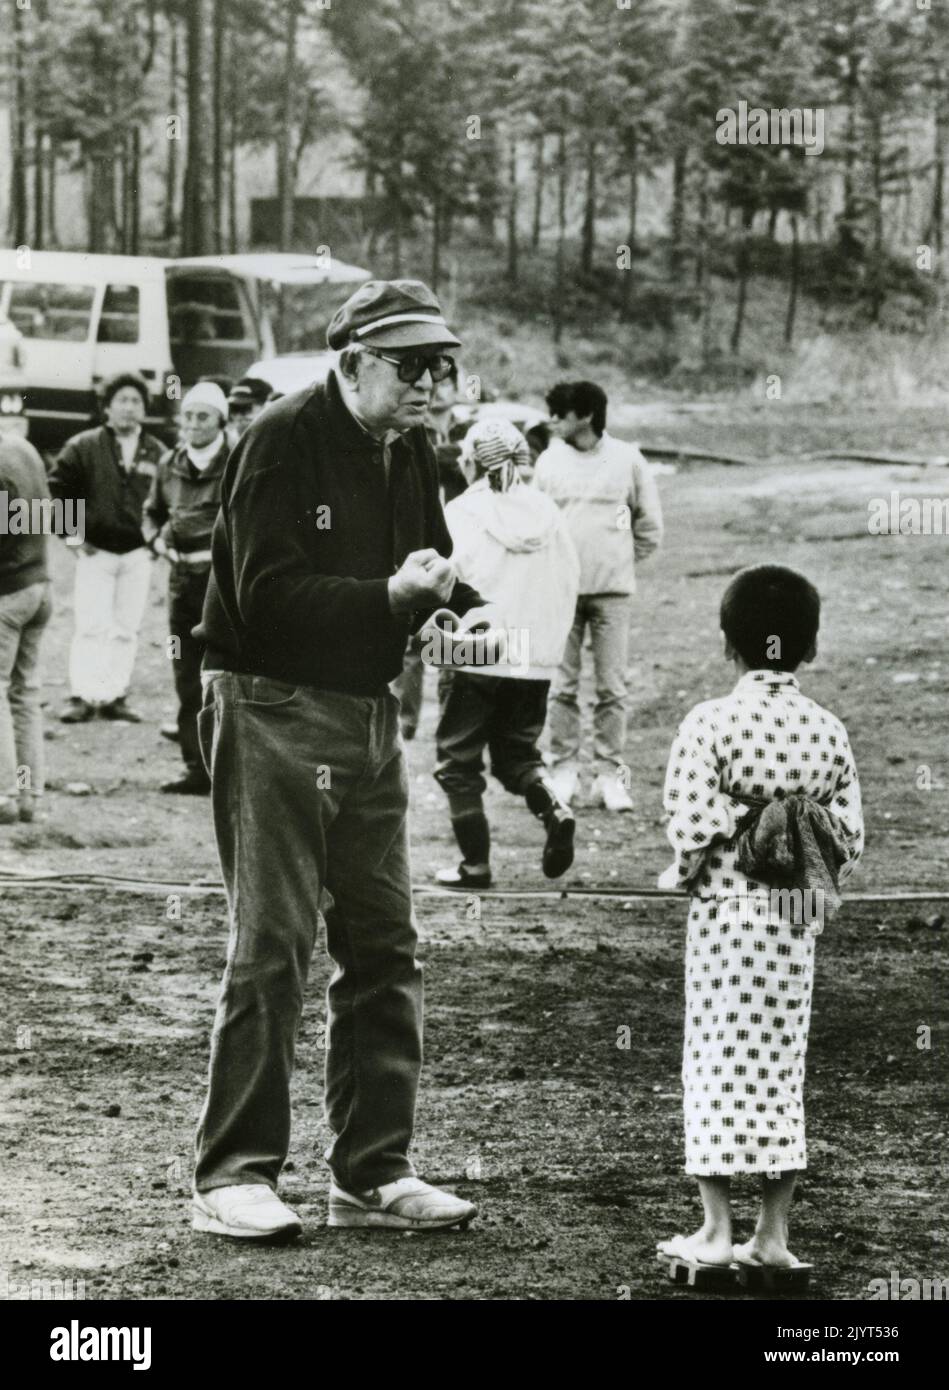 Le réalisateur japonais Akira Kurosawa pendant le tournage du film Dreams, Japan 1990 Banque D'Images